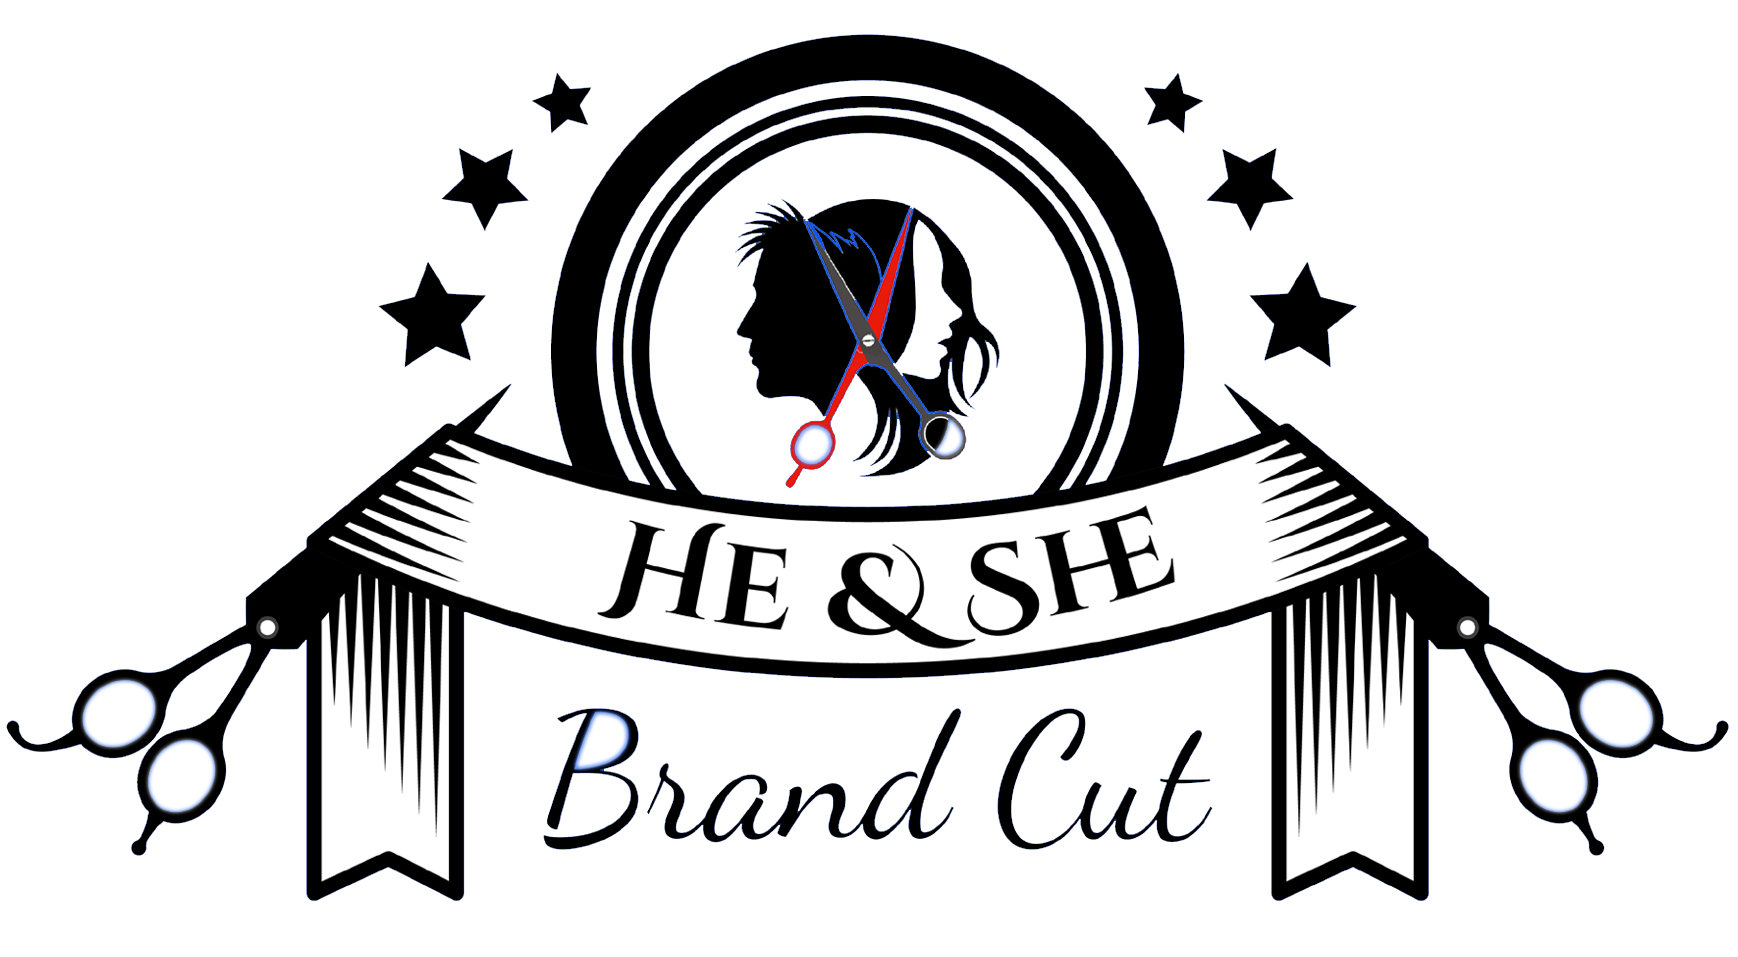 He & She Unisex Family Salon Logo